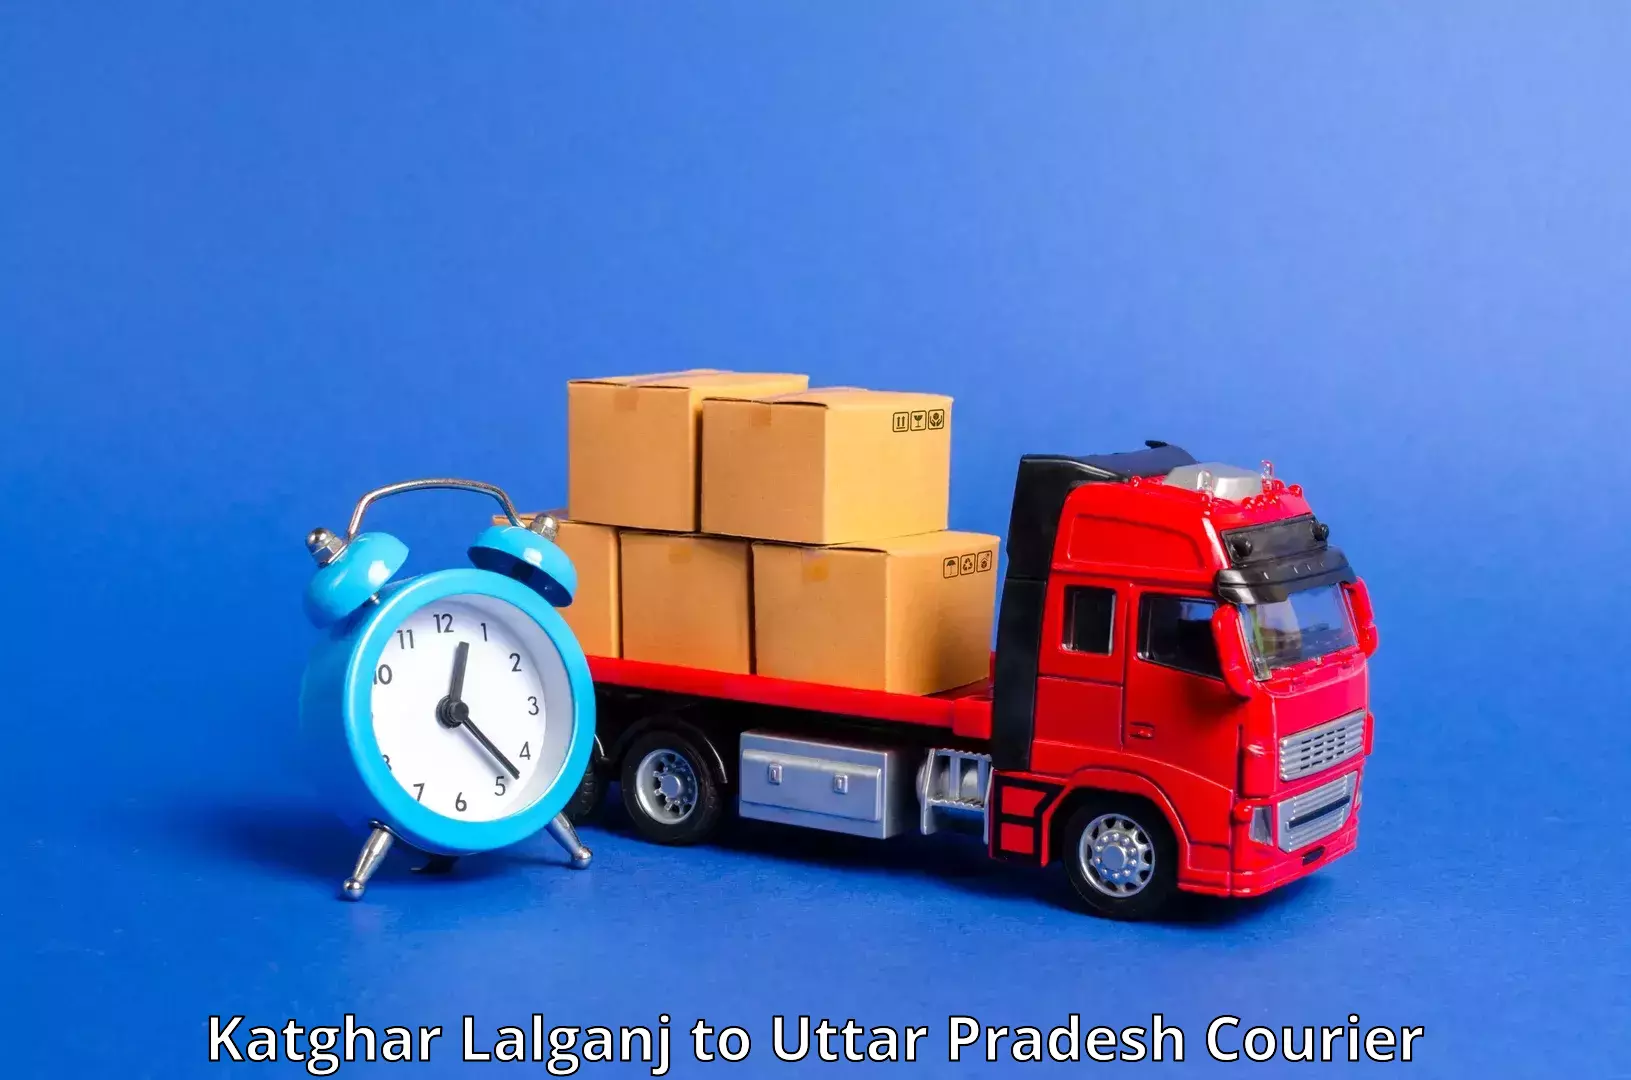 Courier dispatch services Katghar Lalganj to Etah